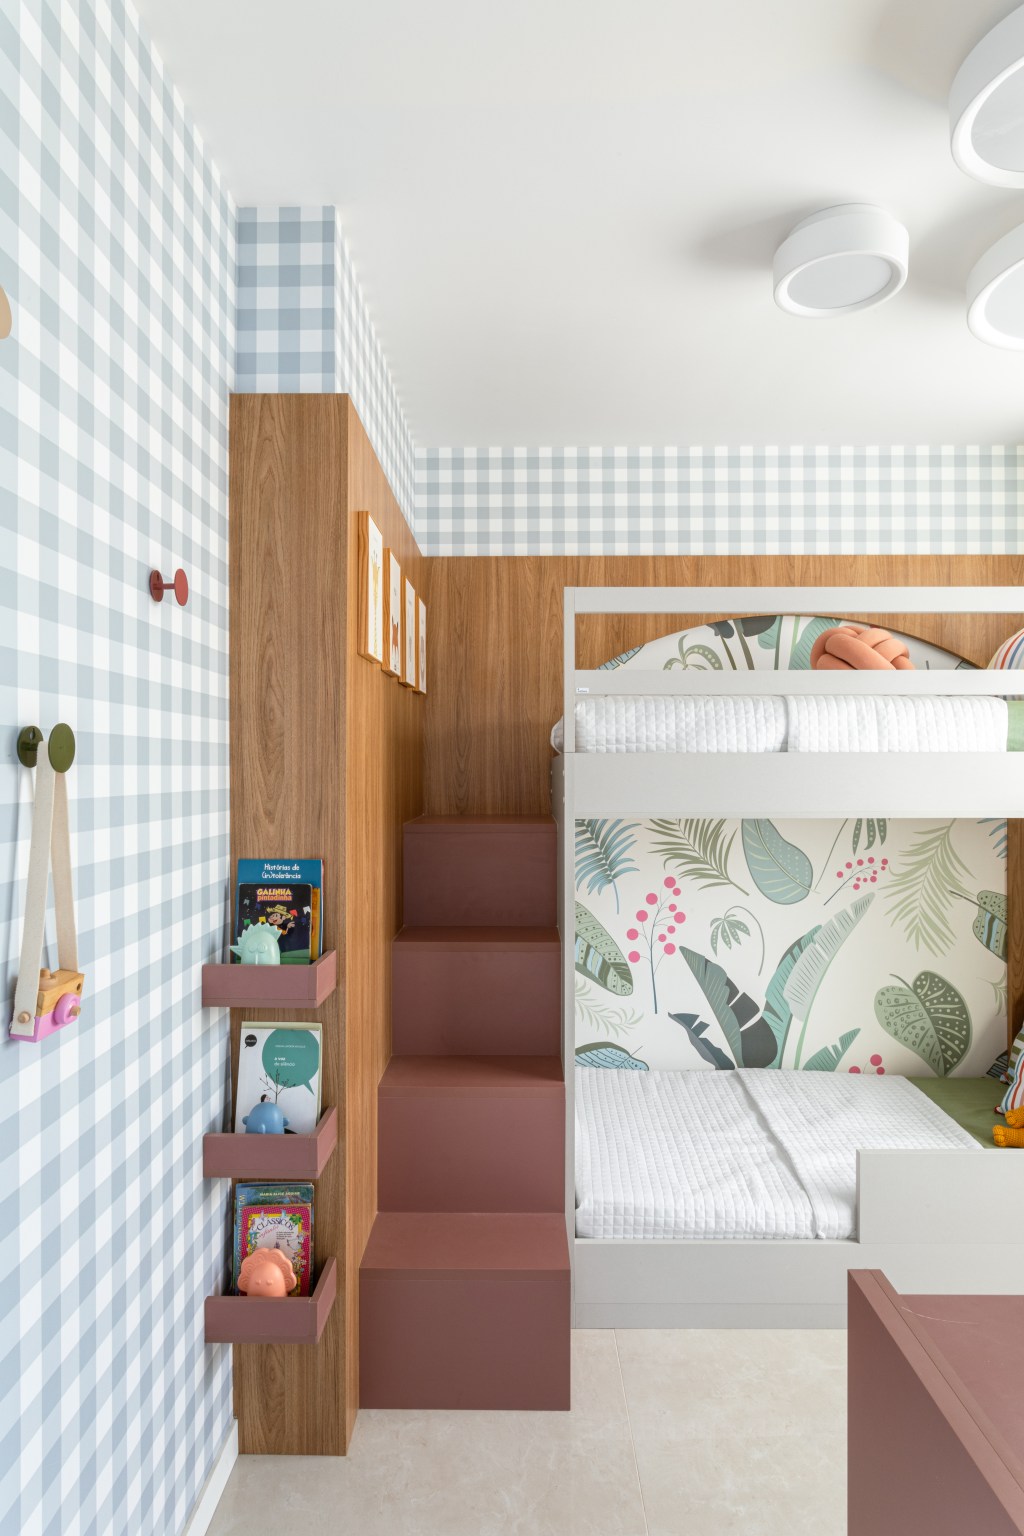 Apê compacto de 56 m² foi projetado para uma família de quatro pessoas. Projeto Nop Arquitetura. Na foto, quarto infantil com beliche e papel de parede.